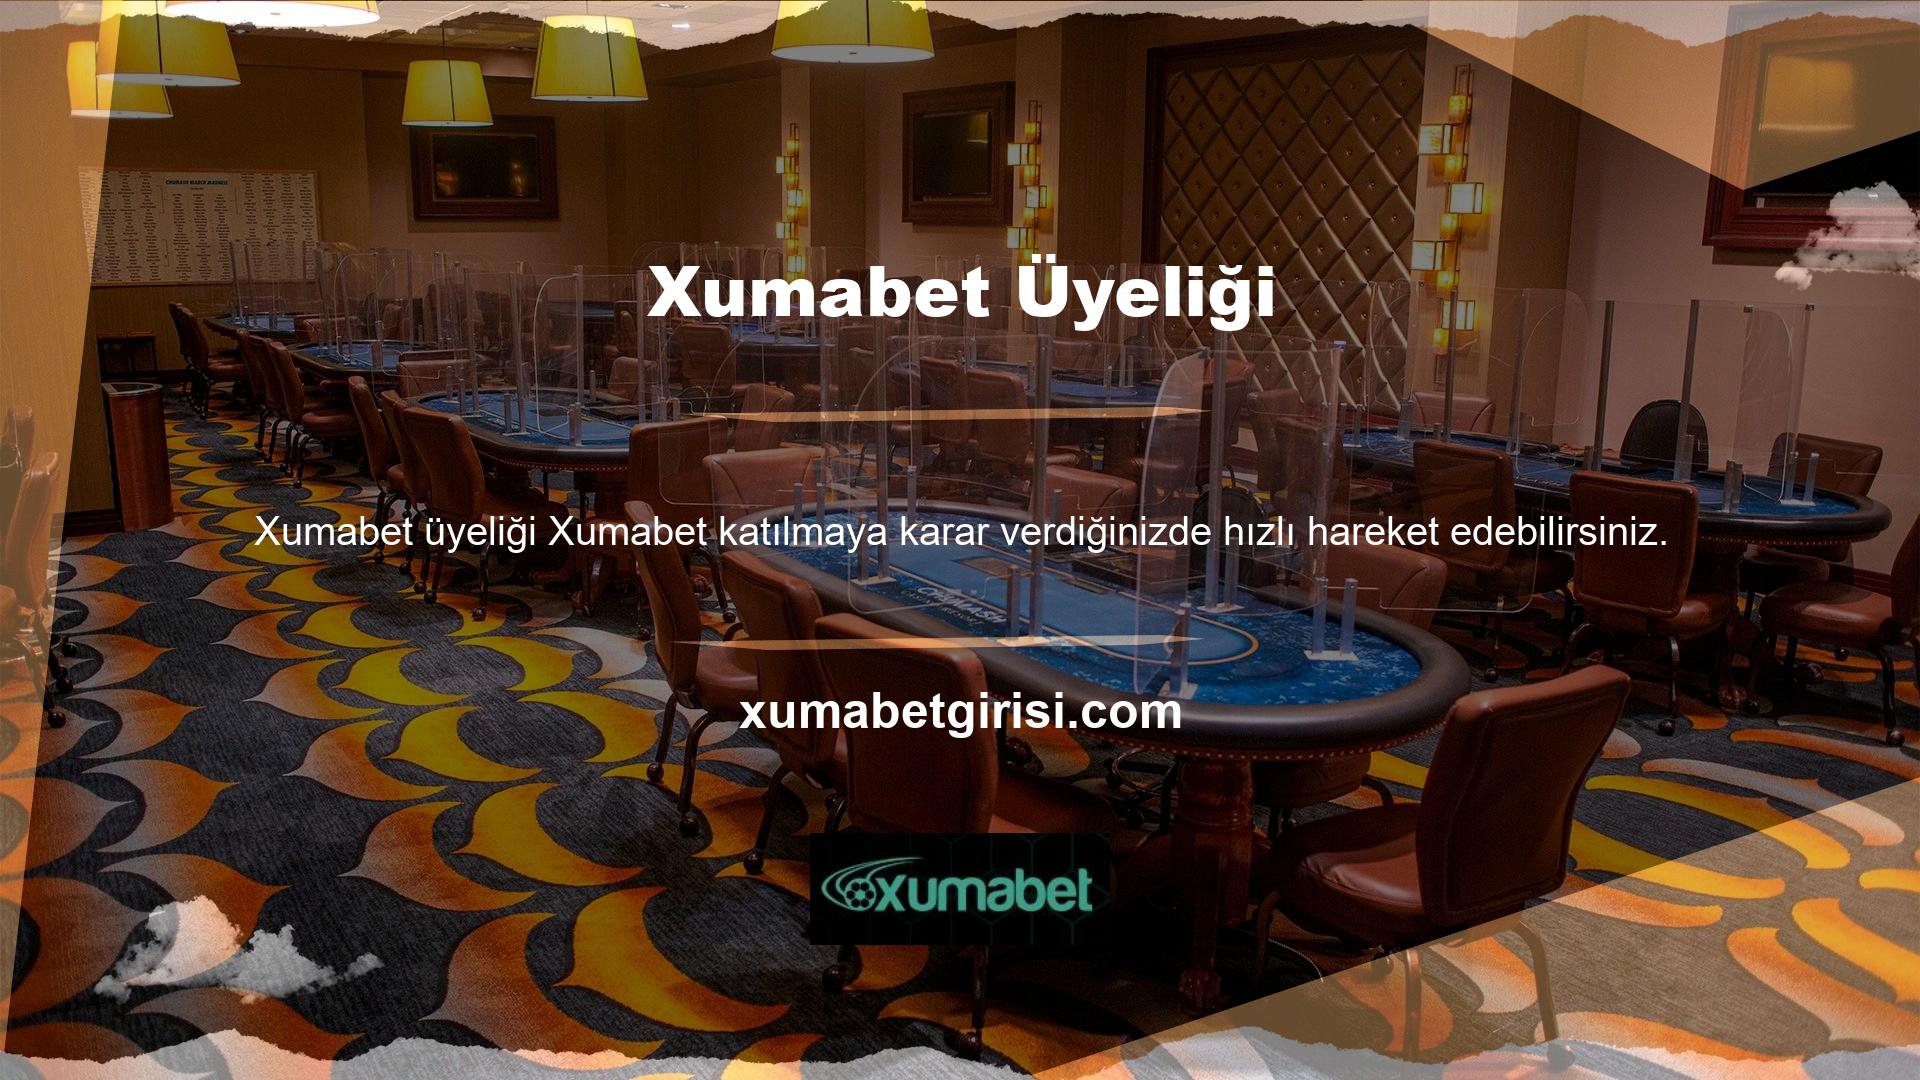 Xumabet üye olmak istemiyorsanız, siteyi açmak için Xumabet kullanın